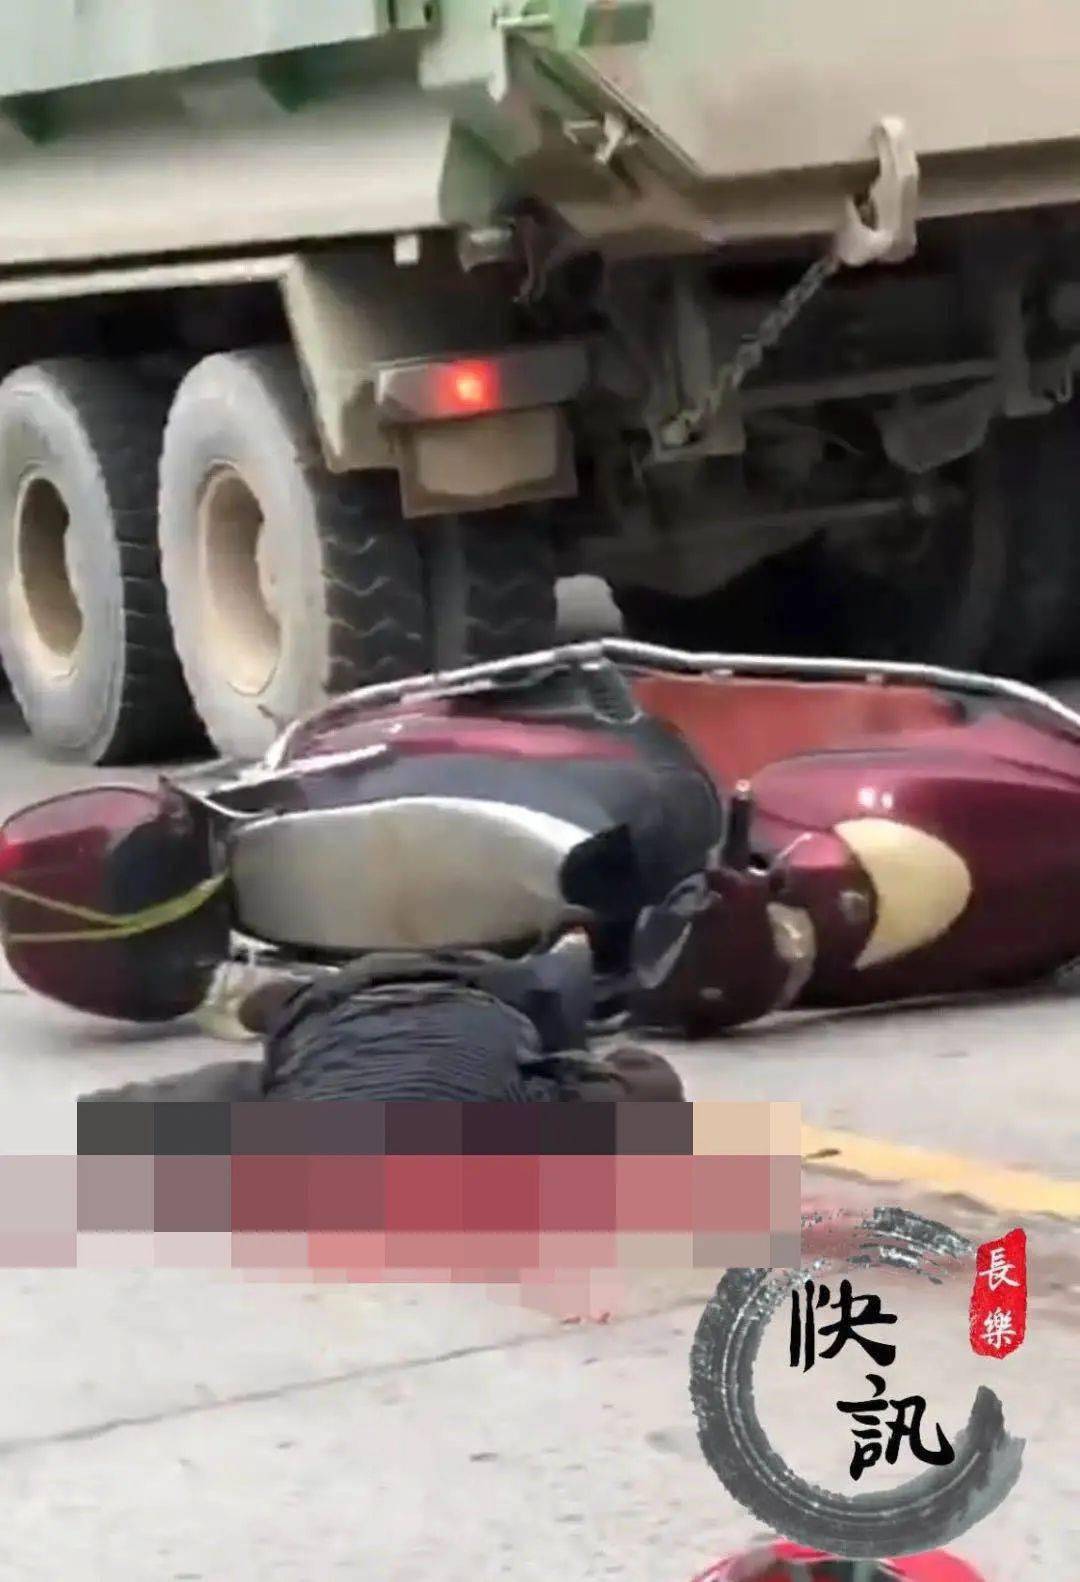 福州街头突发严重车祸!一人当场身亡!头部破裂,疑似大货车.